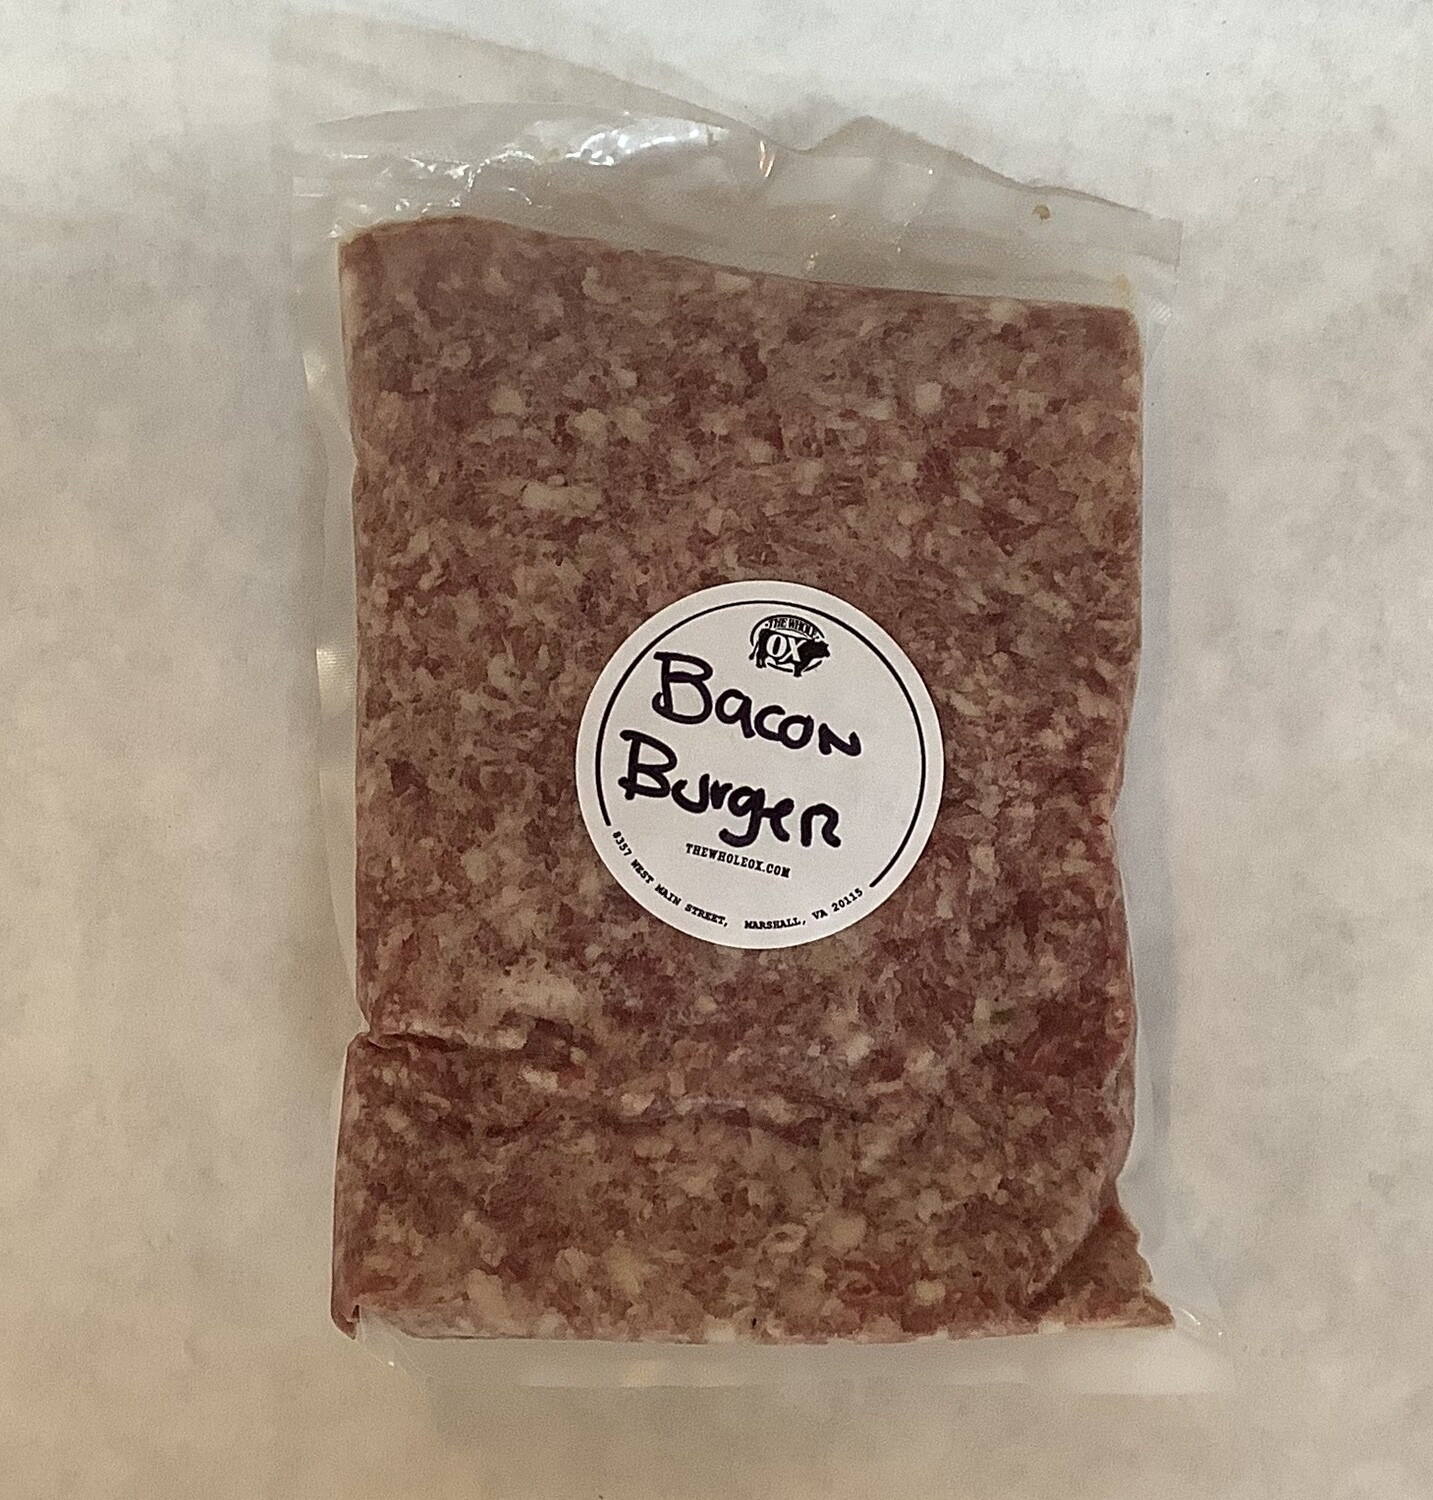 Bacon Burger (per pound)